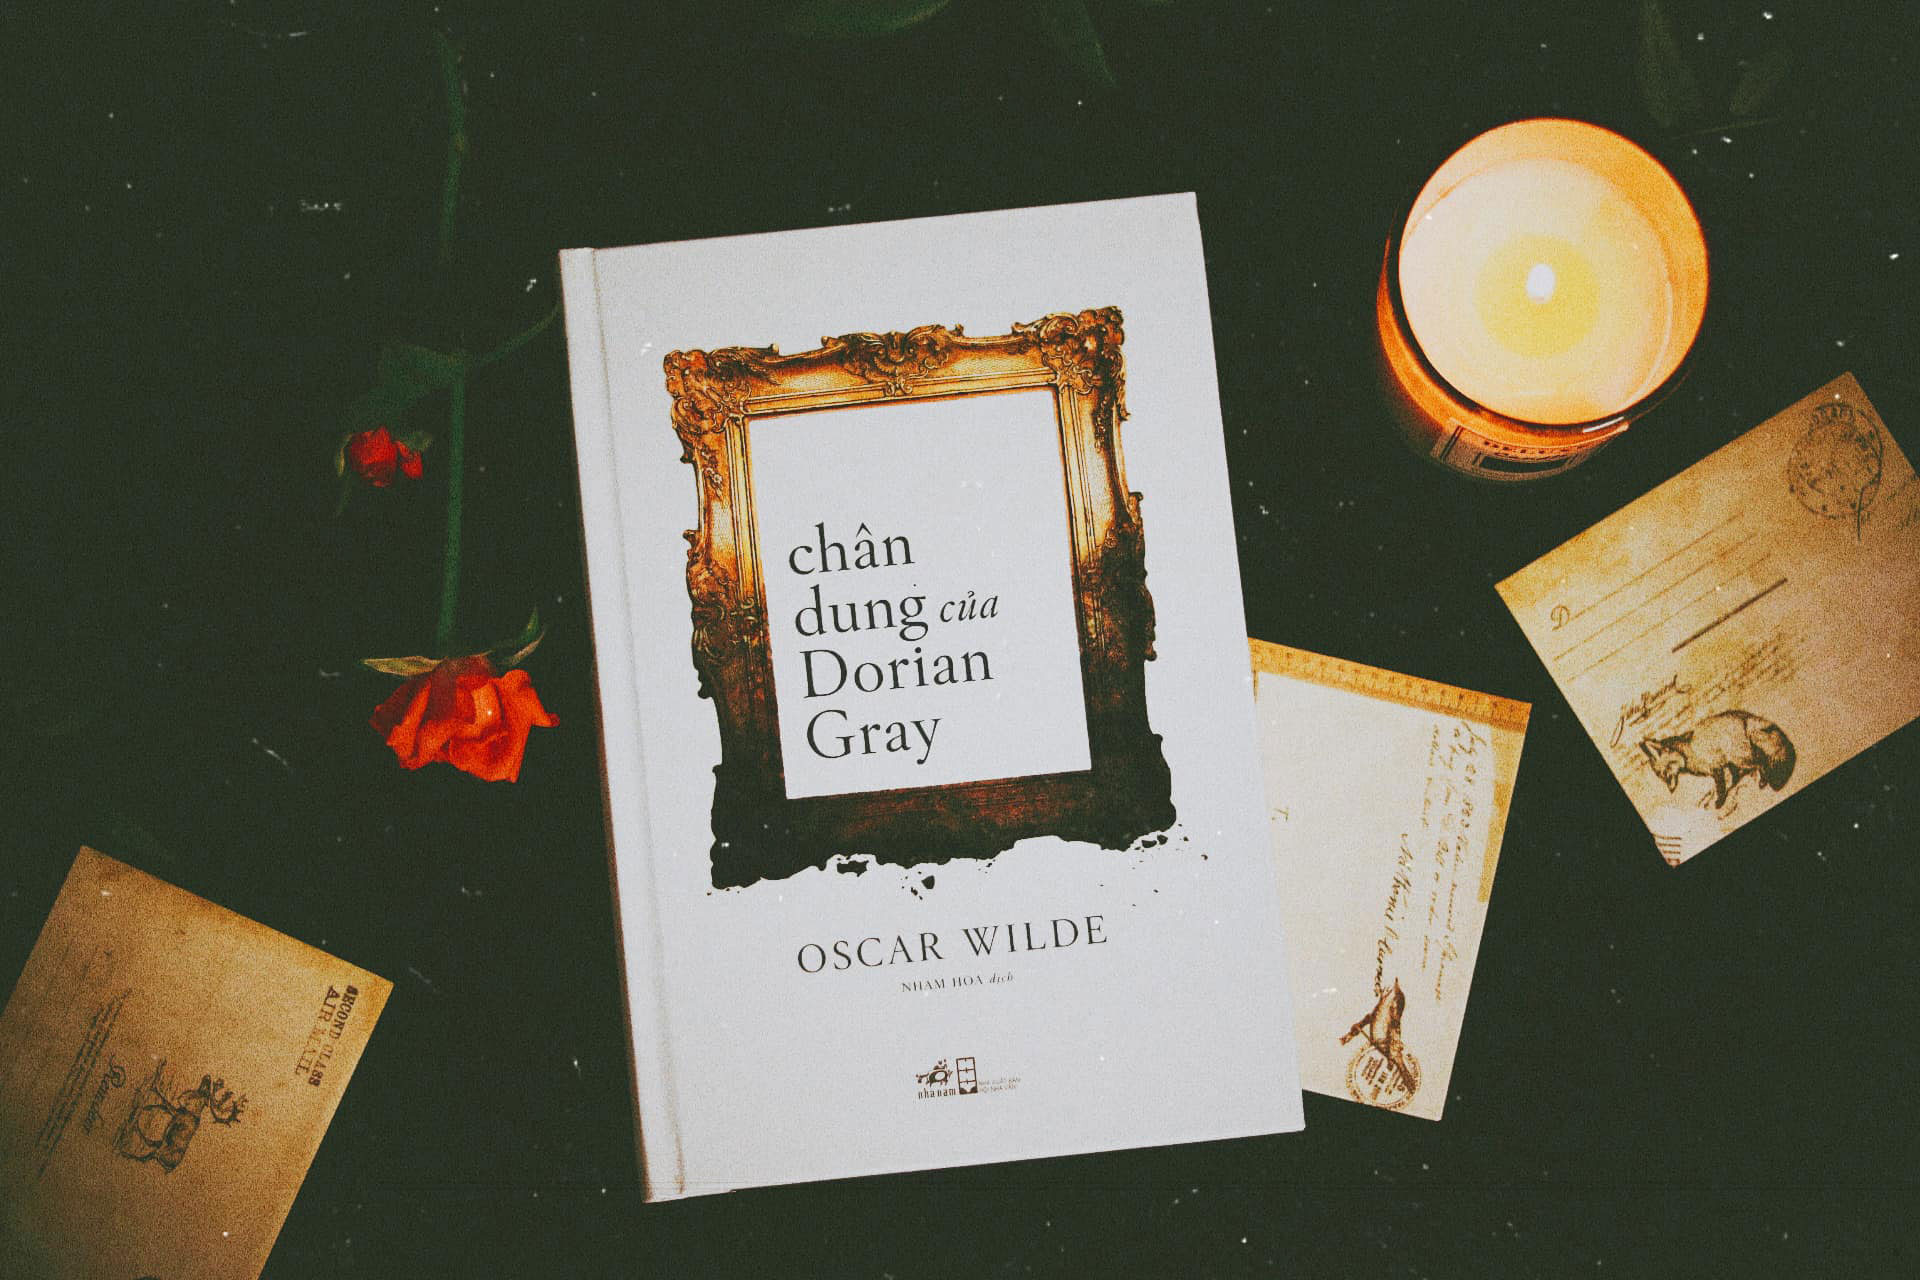 Chân dung của Dorian Gray - Oscar Wilde - Bài ca về cái đẹp và sự tha hóa trong tâm hồn. (Ảnh: Thúy Diễm)